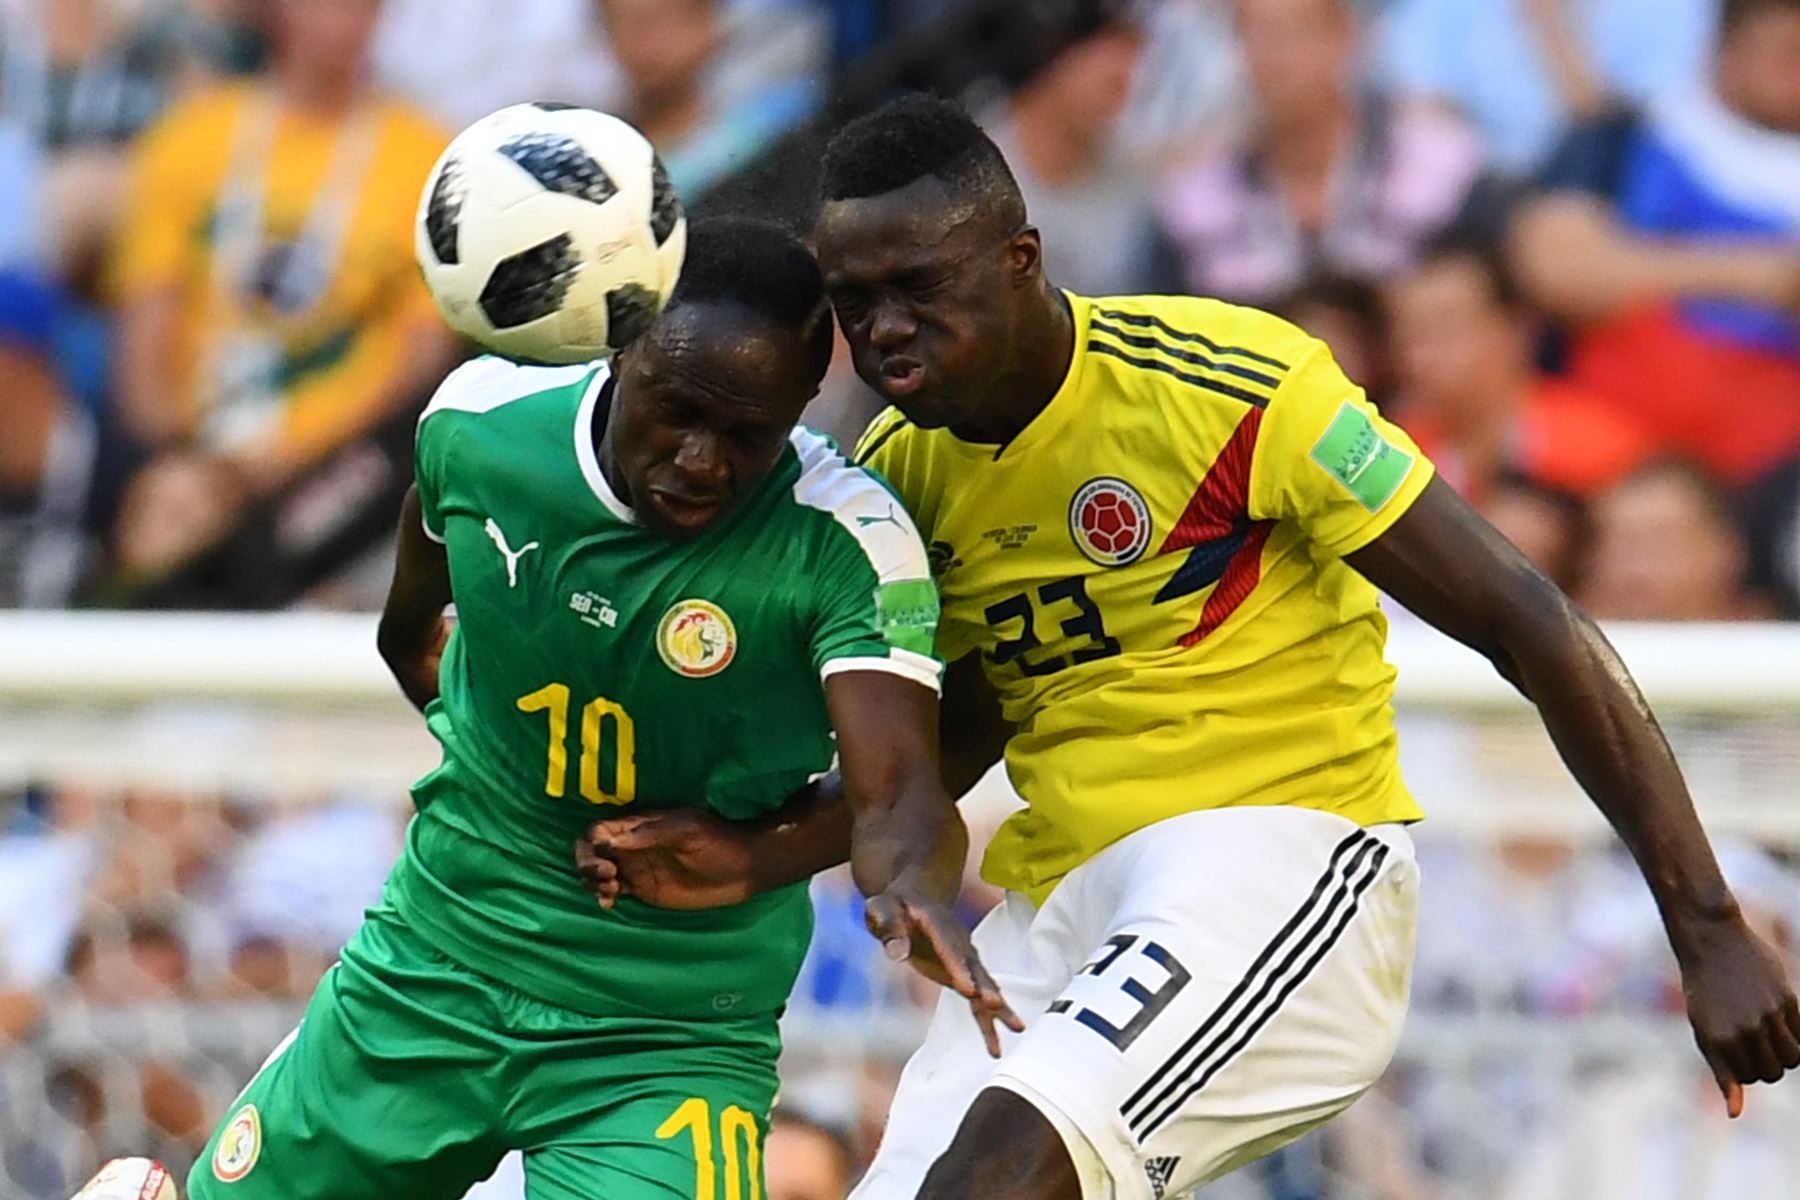 El delantero senegalés Sadio Mane (izq.) Encabeza la pelota mientras compite con el defensor colombiano Davinson Sánchez (R) durante el partido de fútbol del Grupo H de la Copa del Mundo Rusia 2018 entre Senegal y Colombia en el Samara Arena de Samara el 28 de junio de 2018. / AFP